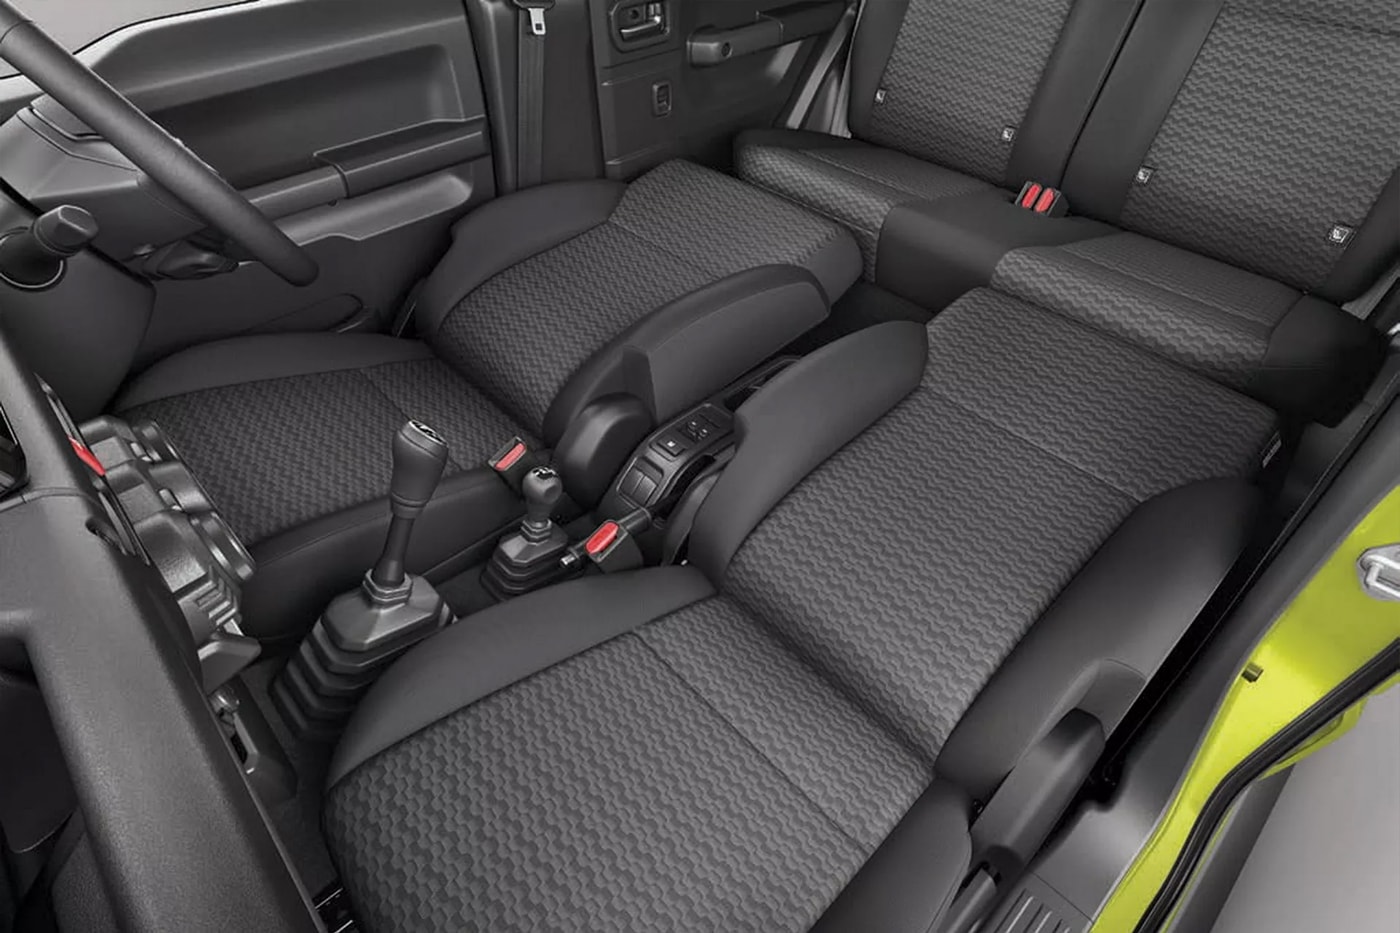 Suzuki Jimny Reportedly Getting Larger, Five-Door Version